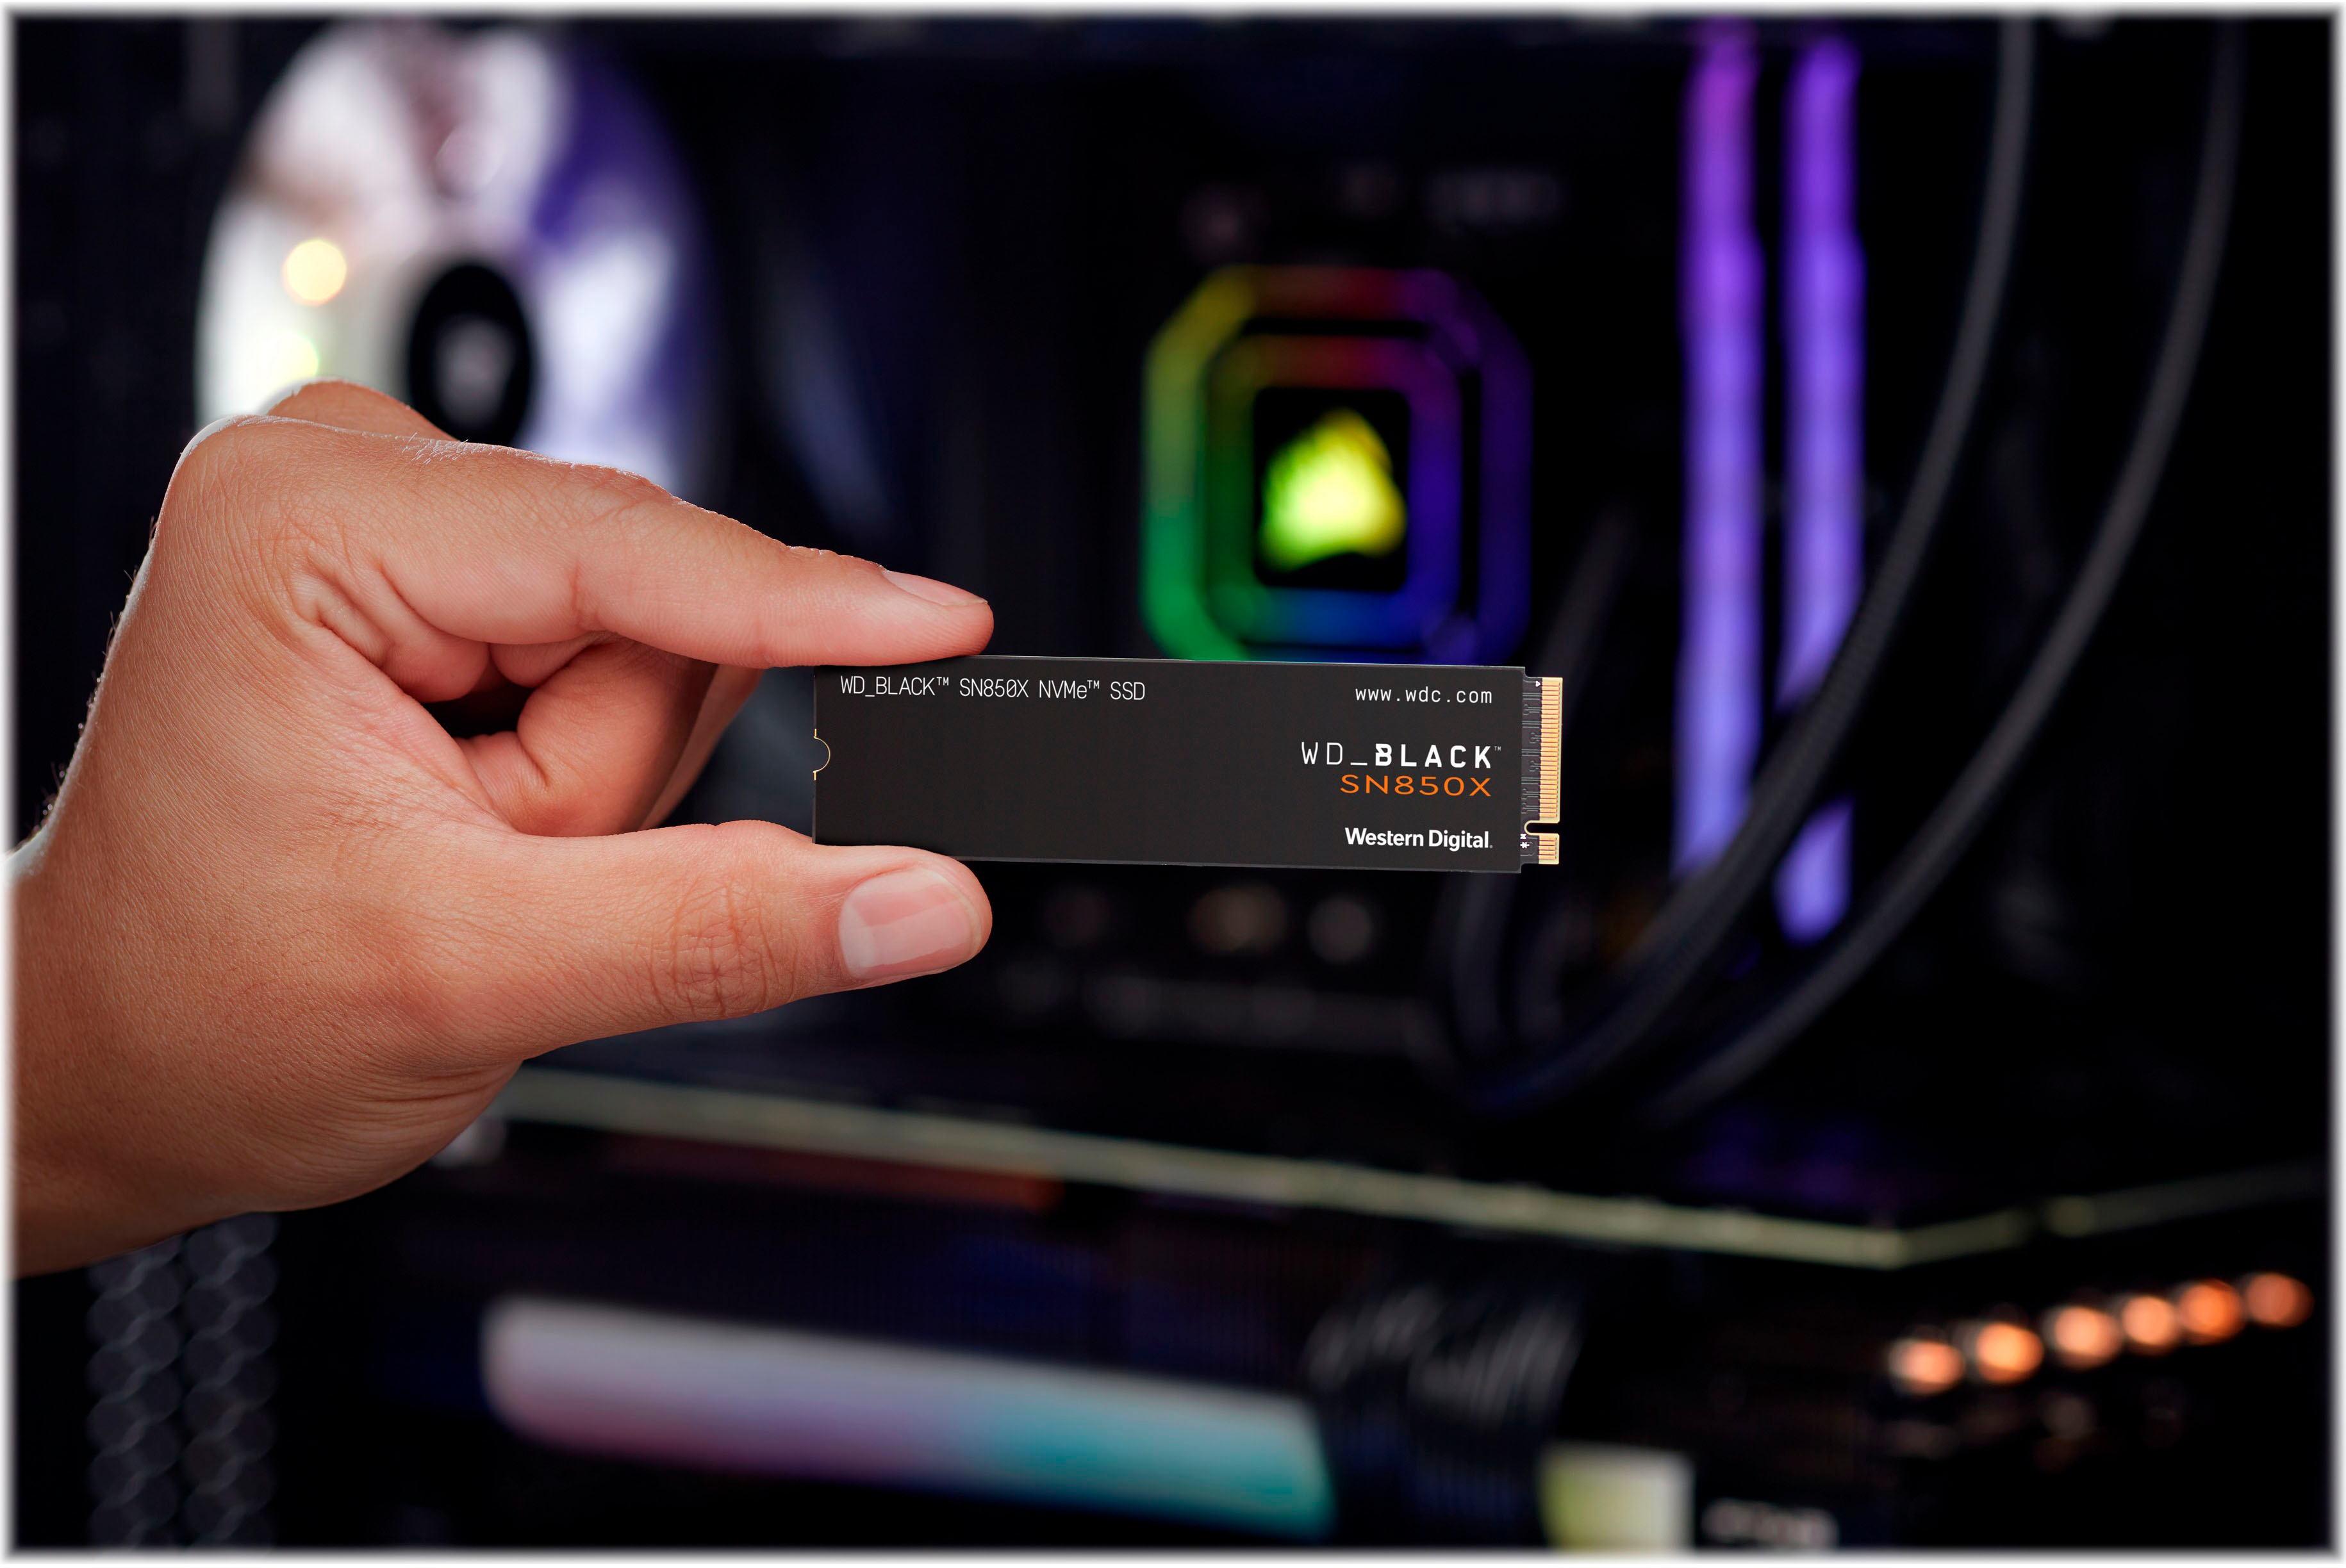 SSD NVMe M.2 2280 PCIe Gen4 WD_BLACK SN850X - 2 To, avec dissipateur  thermique –